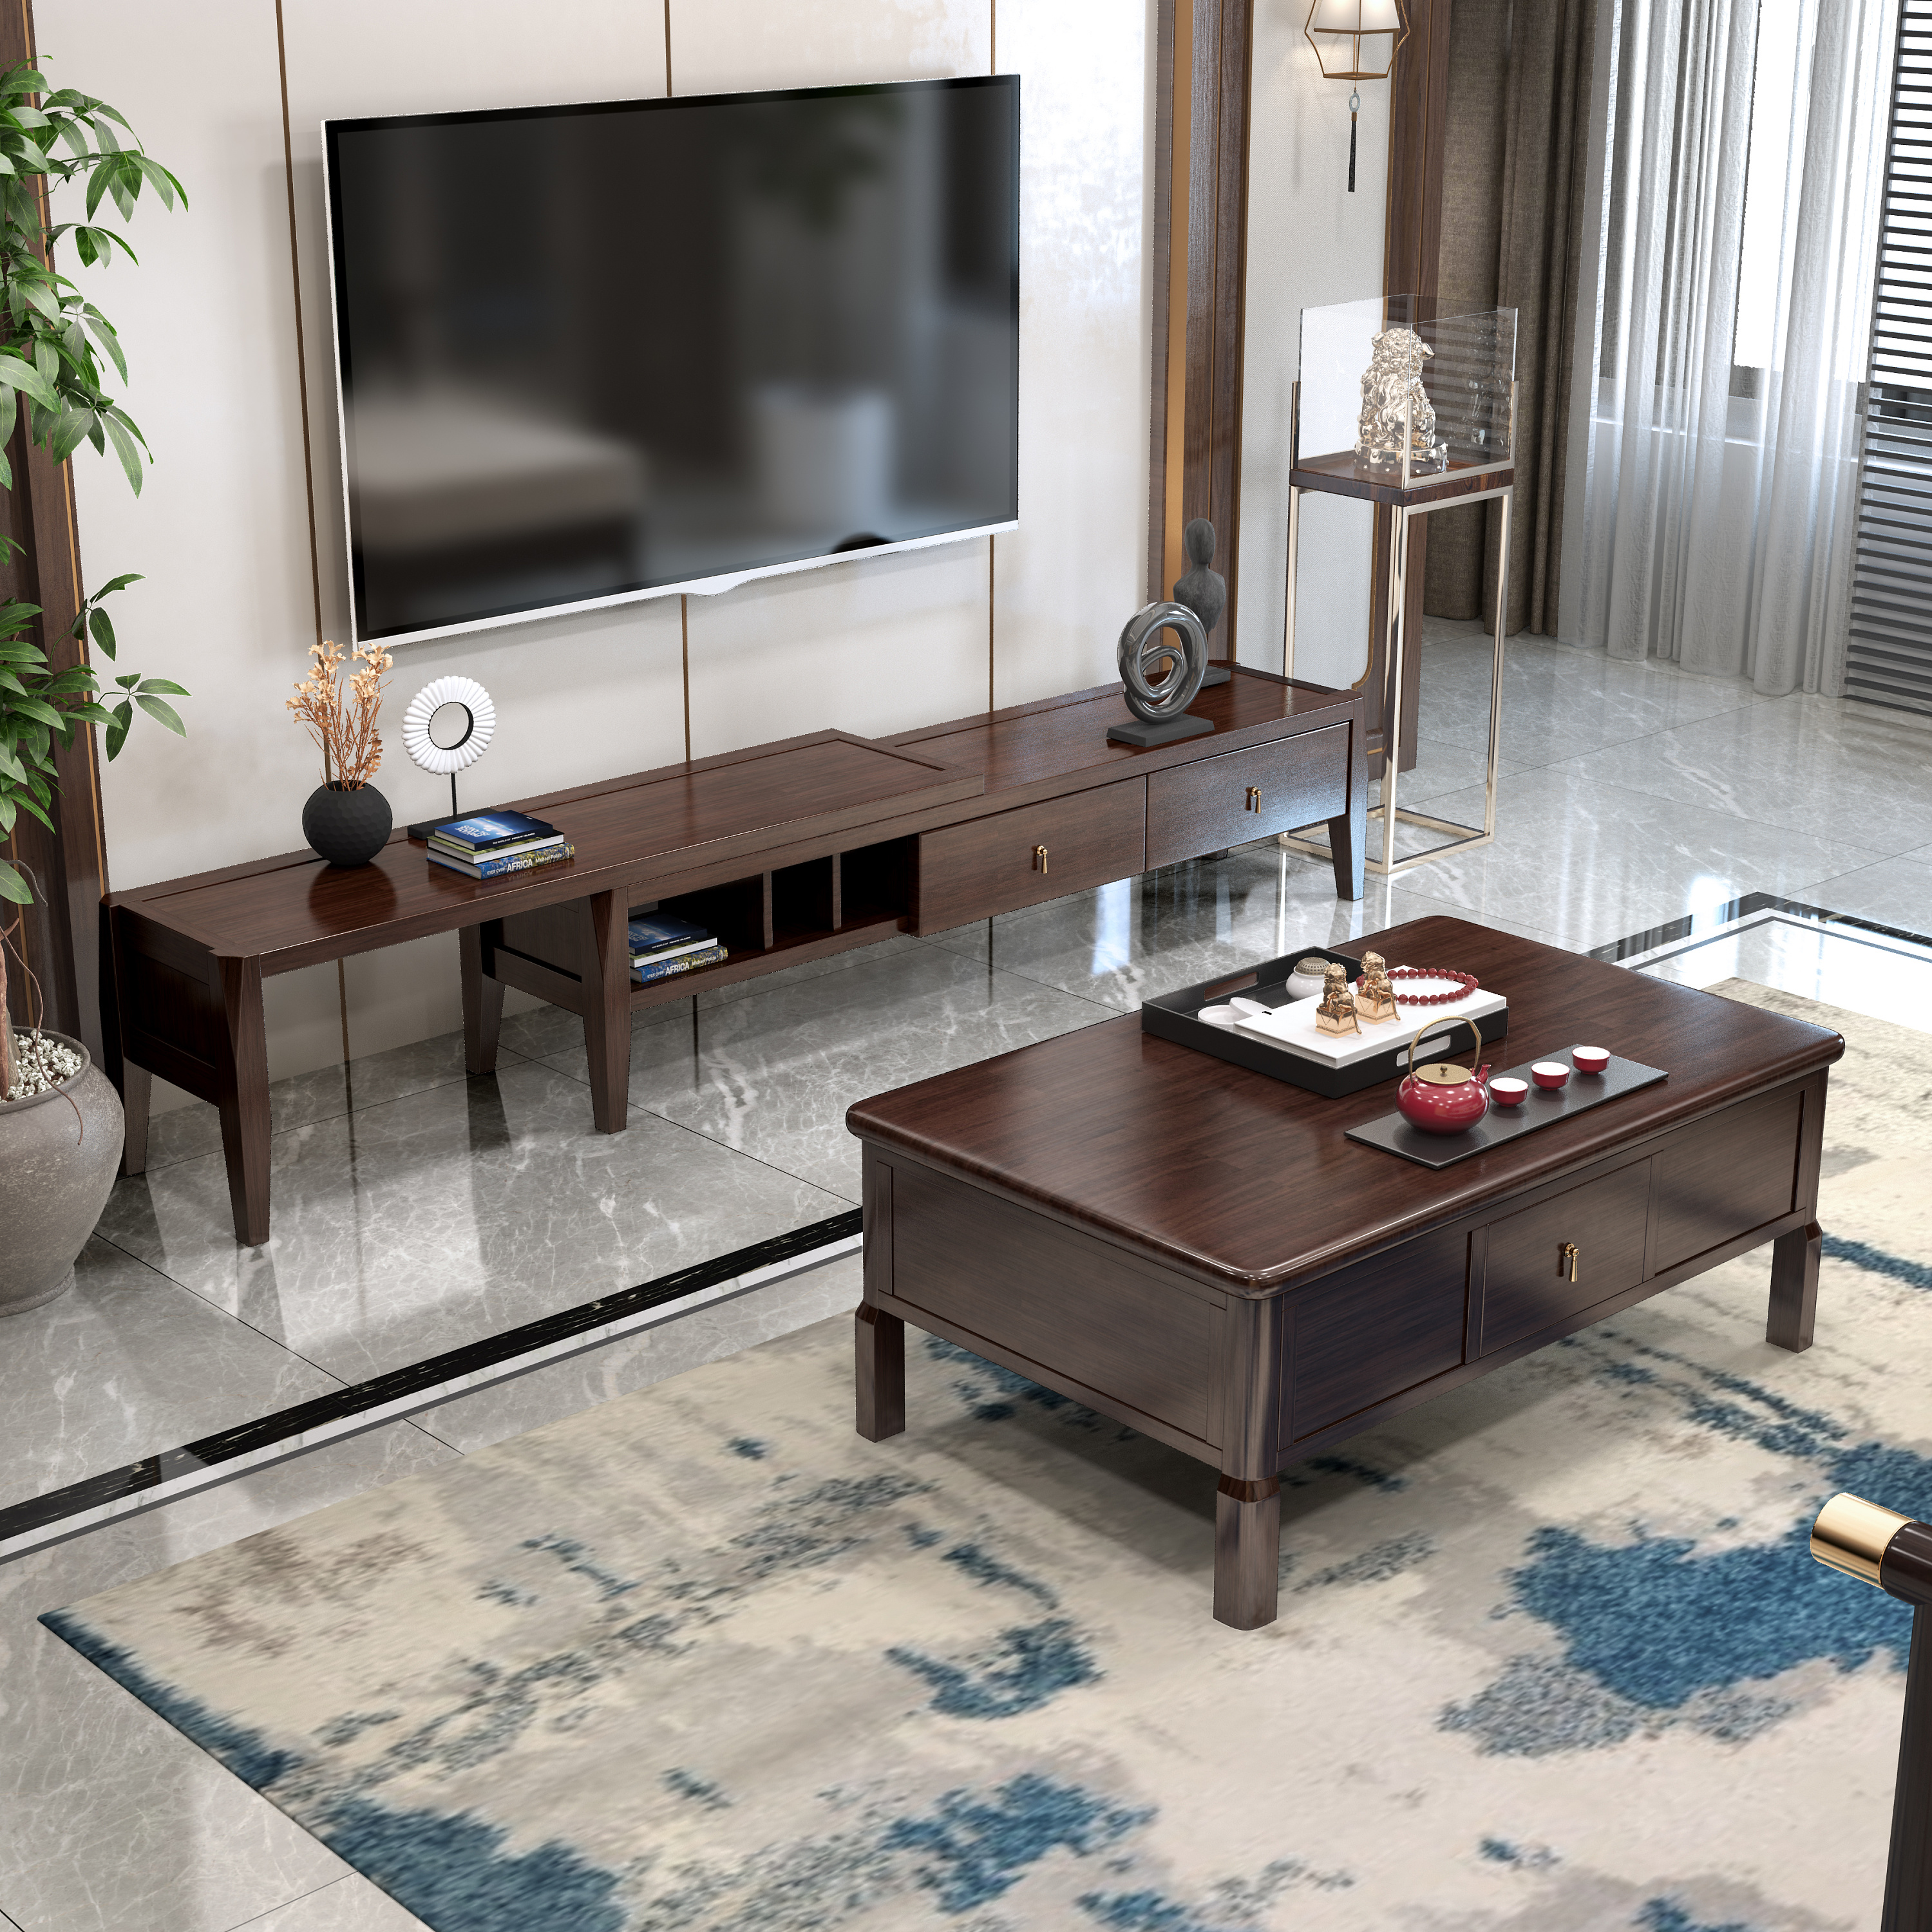 客厅新中式实木电视柜效果图设计- 中国风